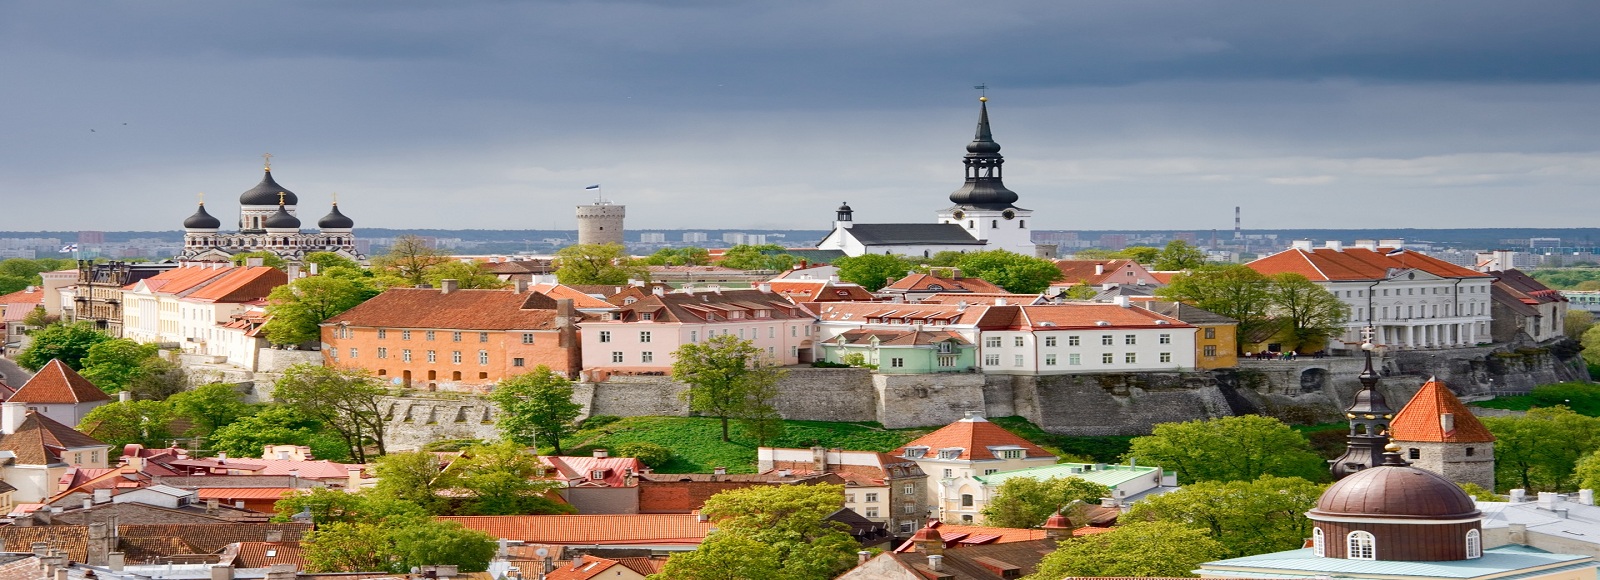 Ofertas de Traslados en Estonia. Traslados económicos en Estonia 